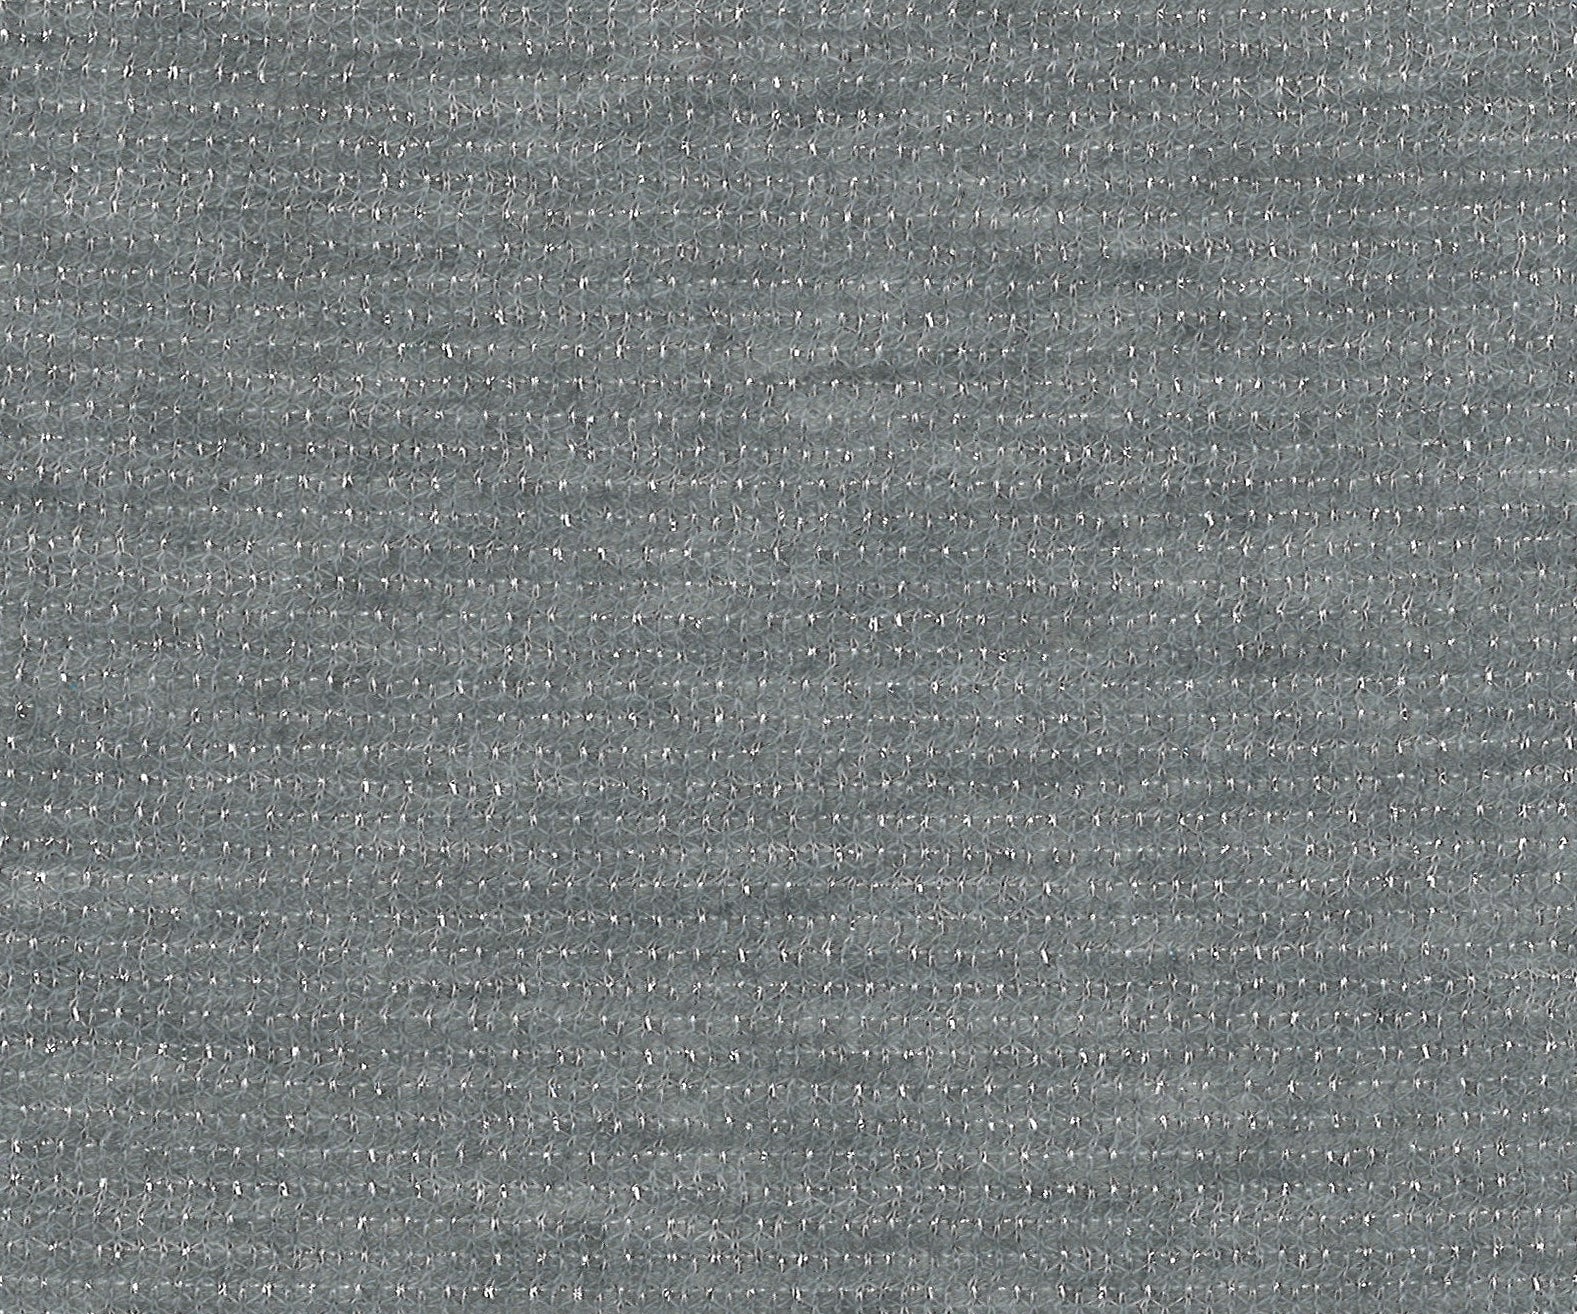 18009-01 56&quot; 240g/yd Metallic Plain Dyed Blend Knit blend knit metallic plain dyed polyester silver Metallic - knit fabric - woven fabric - fabric company - fabric wholesale - fabric b2b - fabric factory - high quality fabric - hong kong fabric - fabric hk - acetate fabric - cotton fabric - linen fabric - metallic fabric - nylon fabric - polyester fabric - spandex fabric - chun wing hing - cwh hk - fabric worldwide ship - 針織布 - 梳織布 - 布料公司- 布料批發 - 香港布料 - 秦榮興